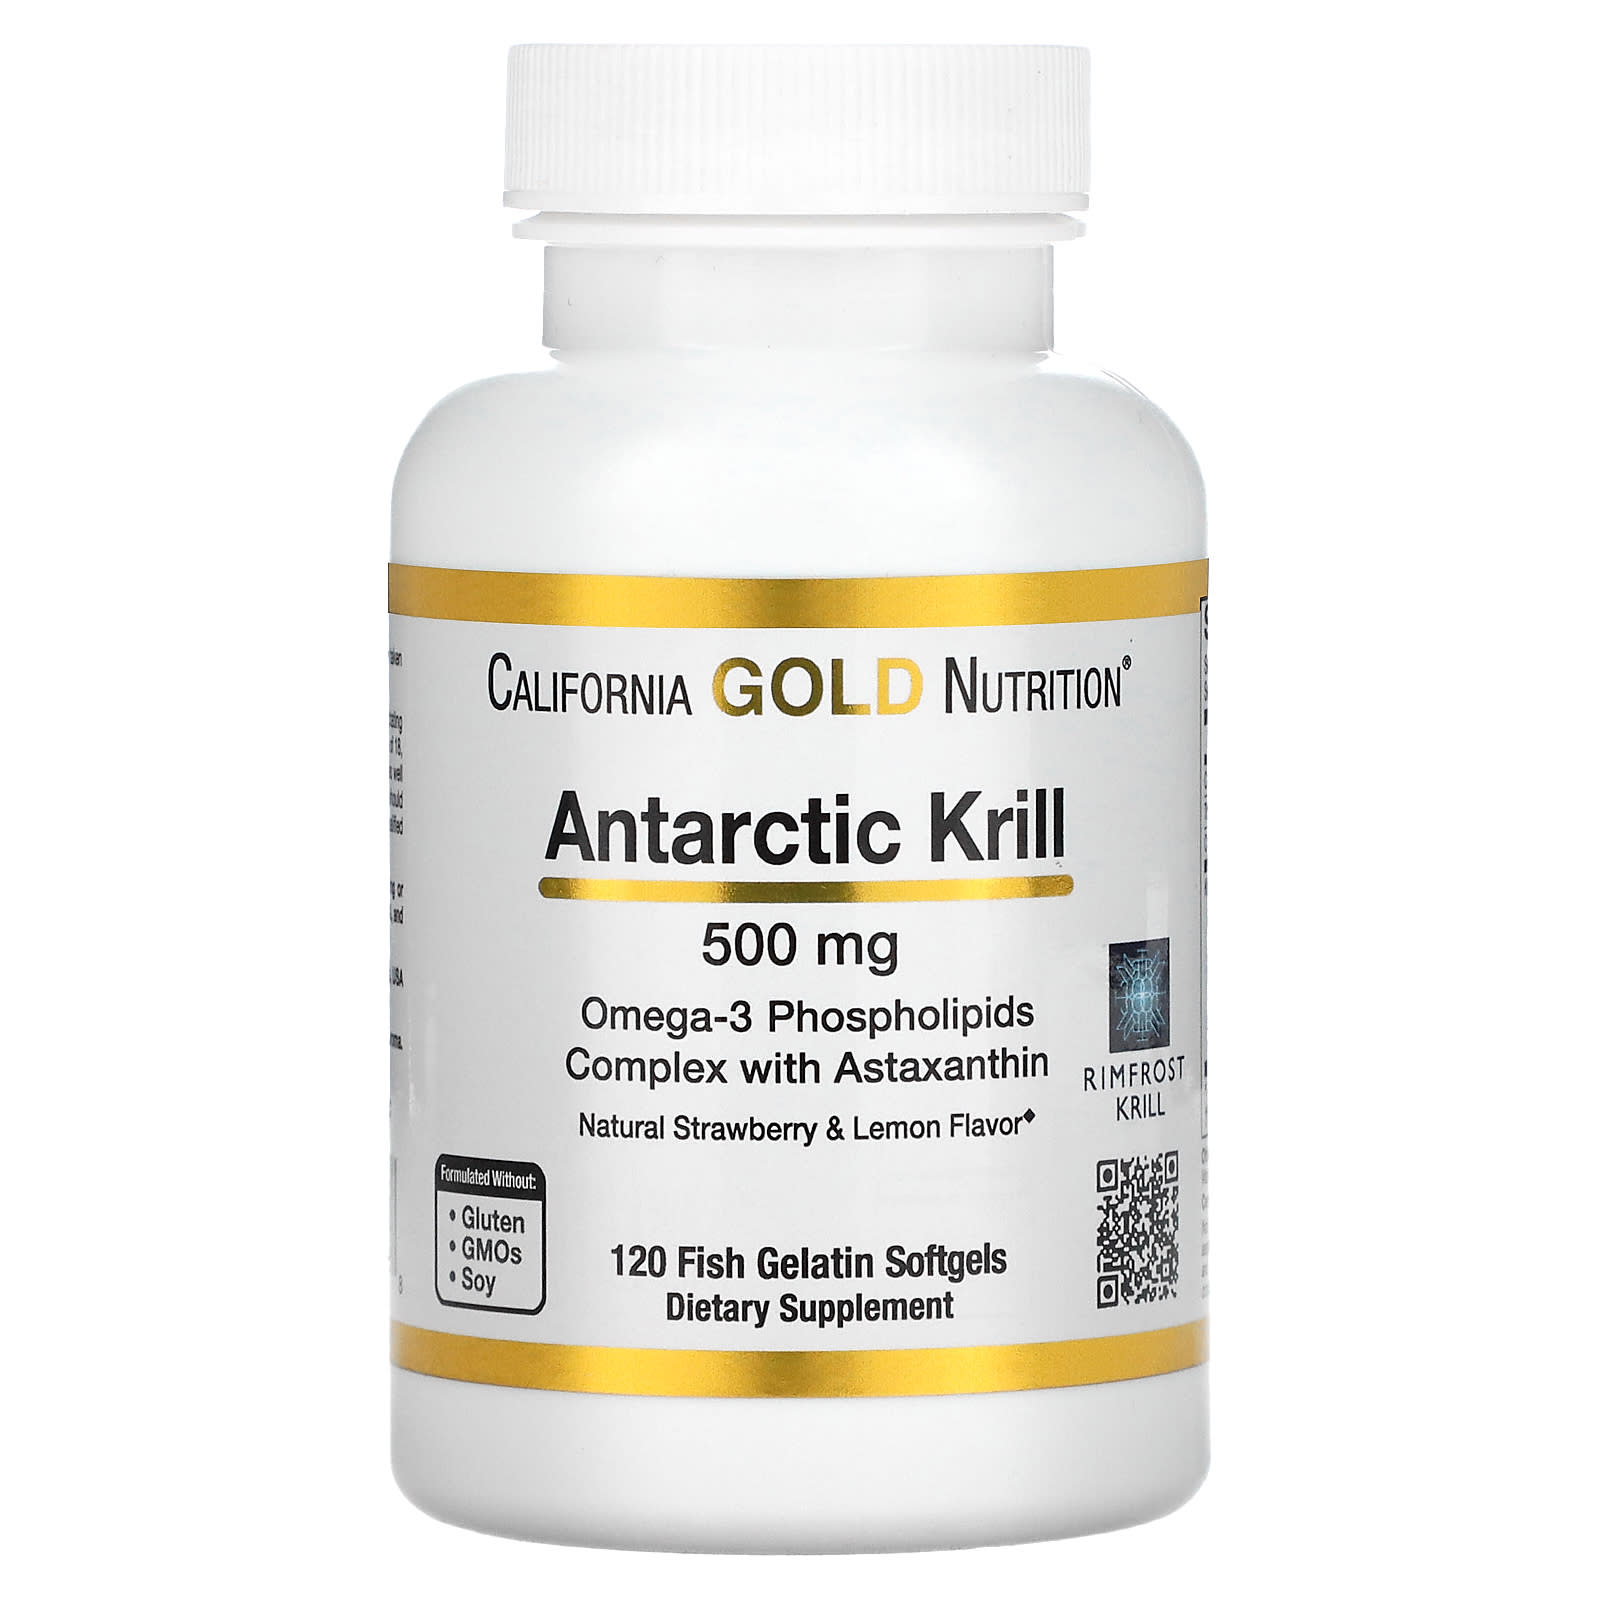 California Gold Nutrition, масло антарктического криля, комплекс фосфолипидов из омега-3 с астаксантином, натуральный клубнично-лимонный вкус, 500 мг, 120 капсул